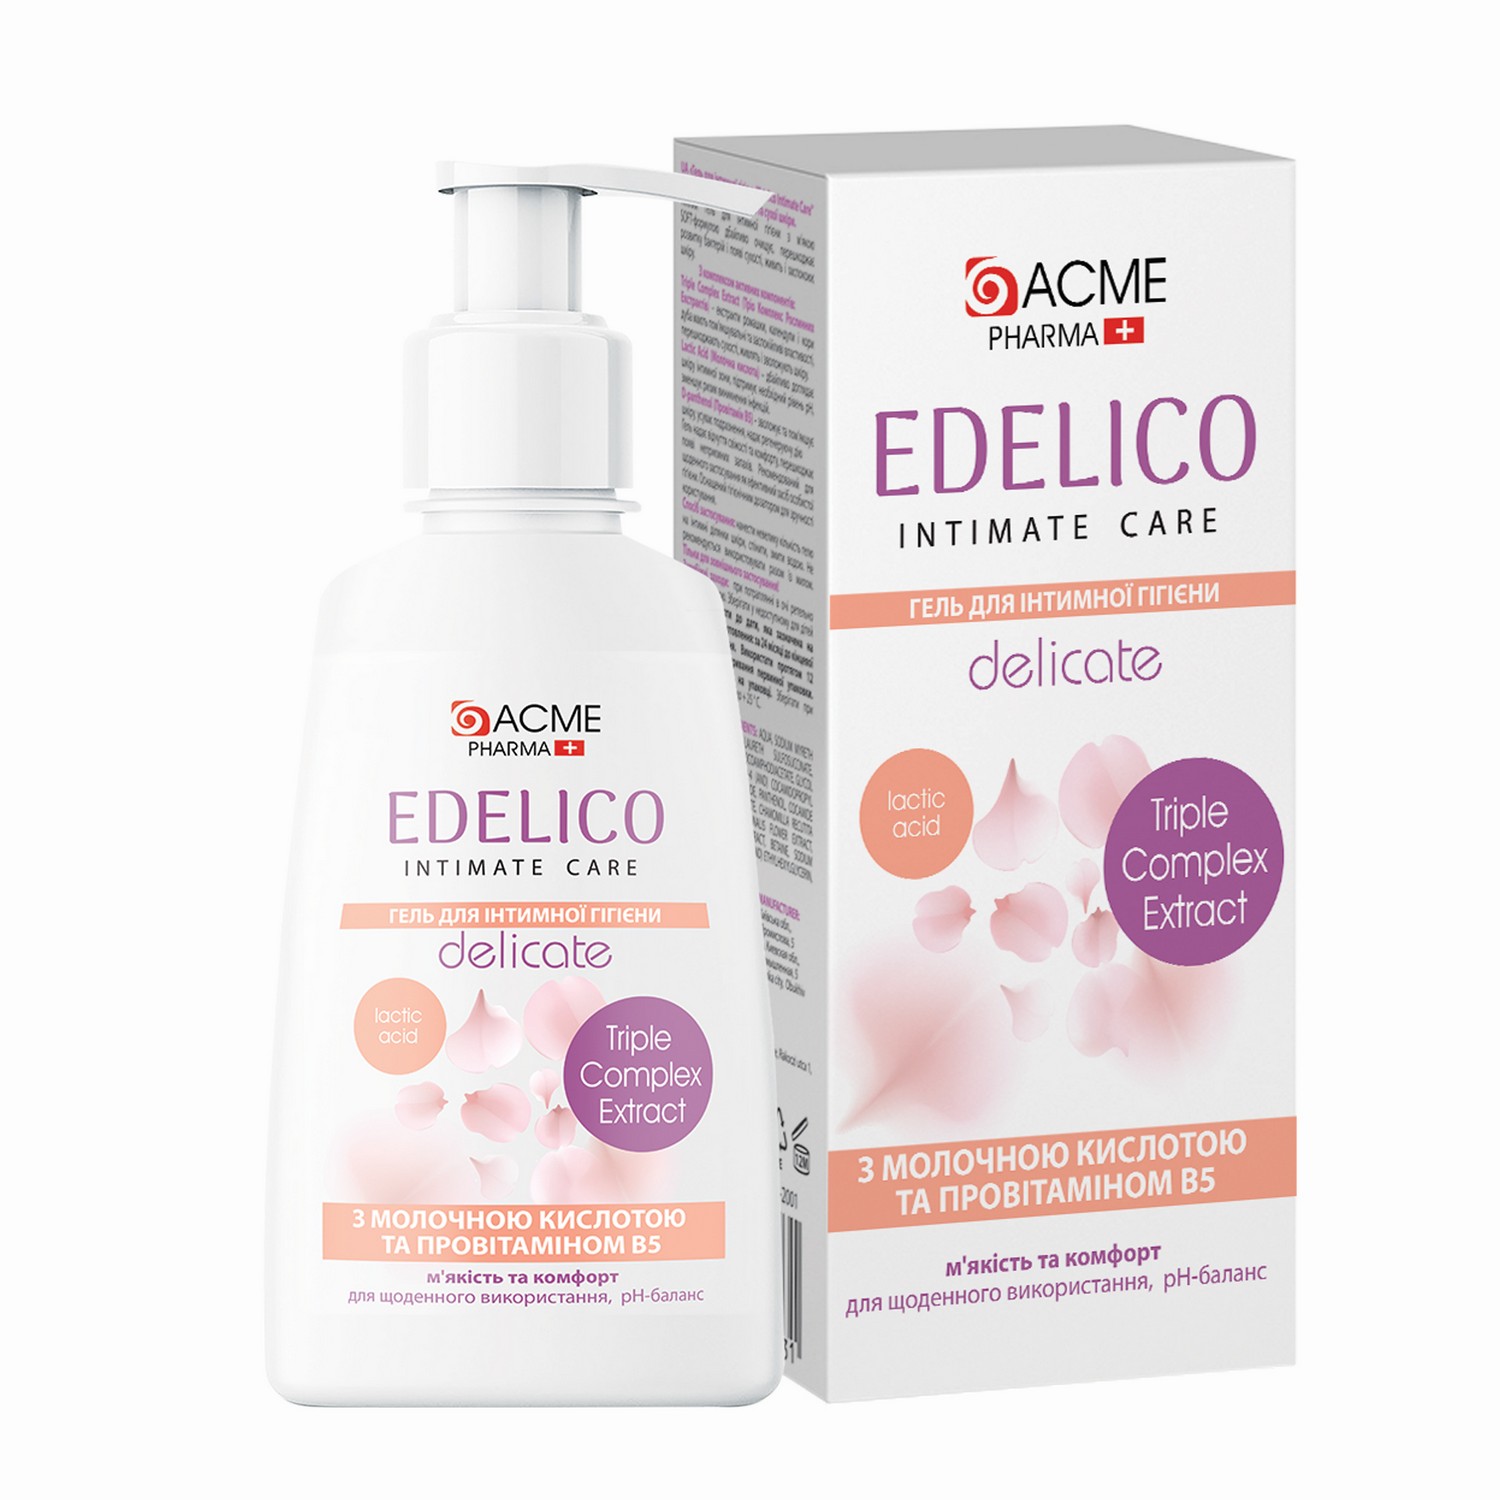 Гель для интимной гигиены Edelico Intimate Care Delicate для чувствительной и сухой кожи 300 мл - фото 2